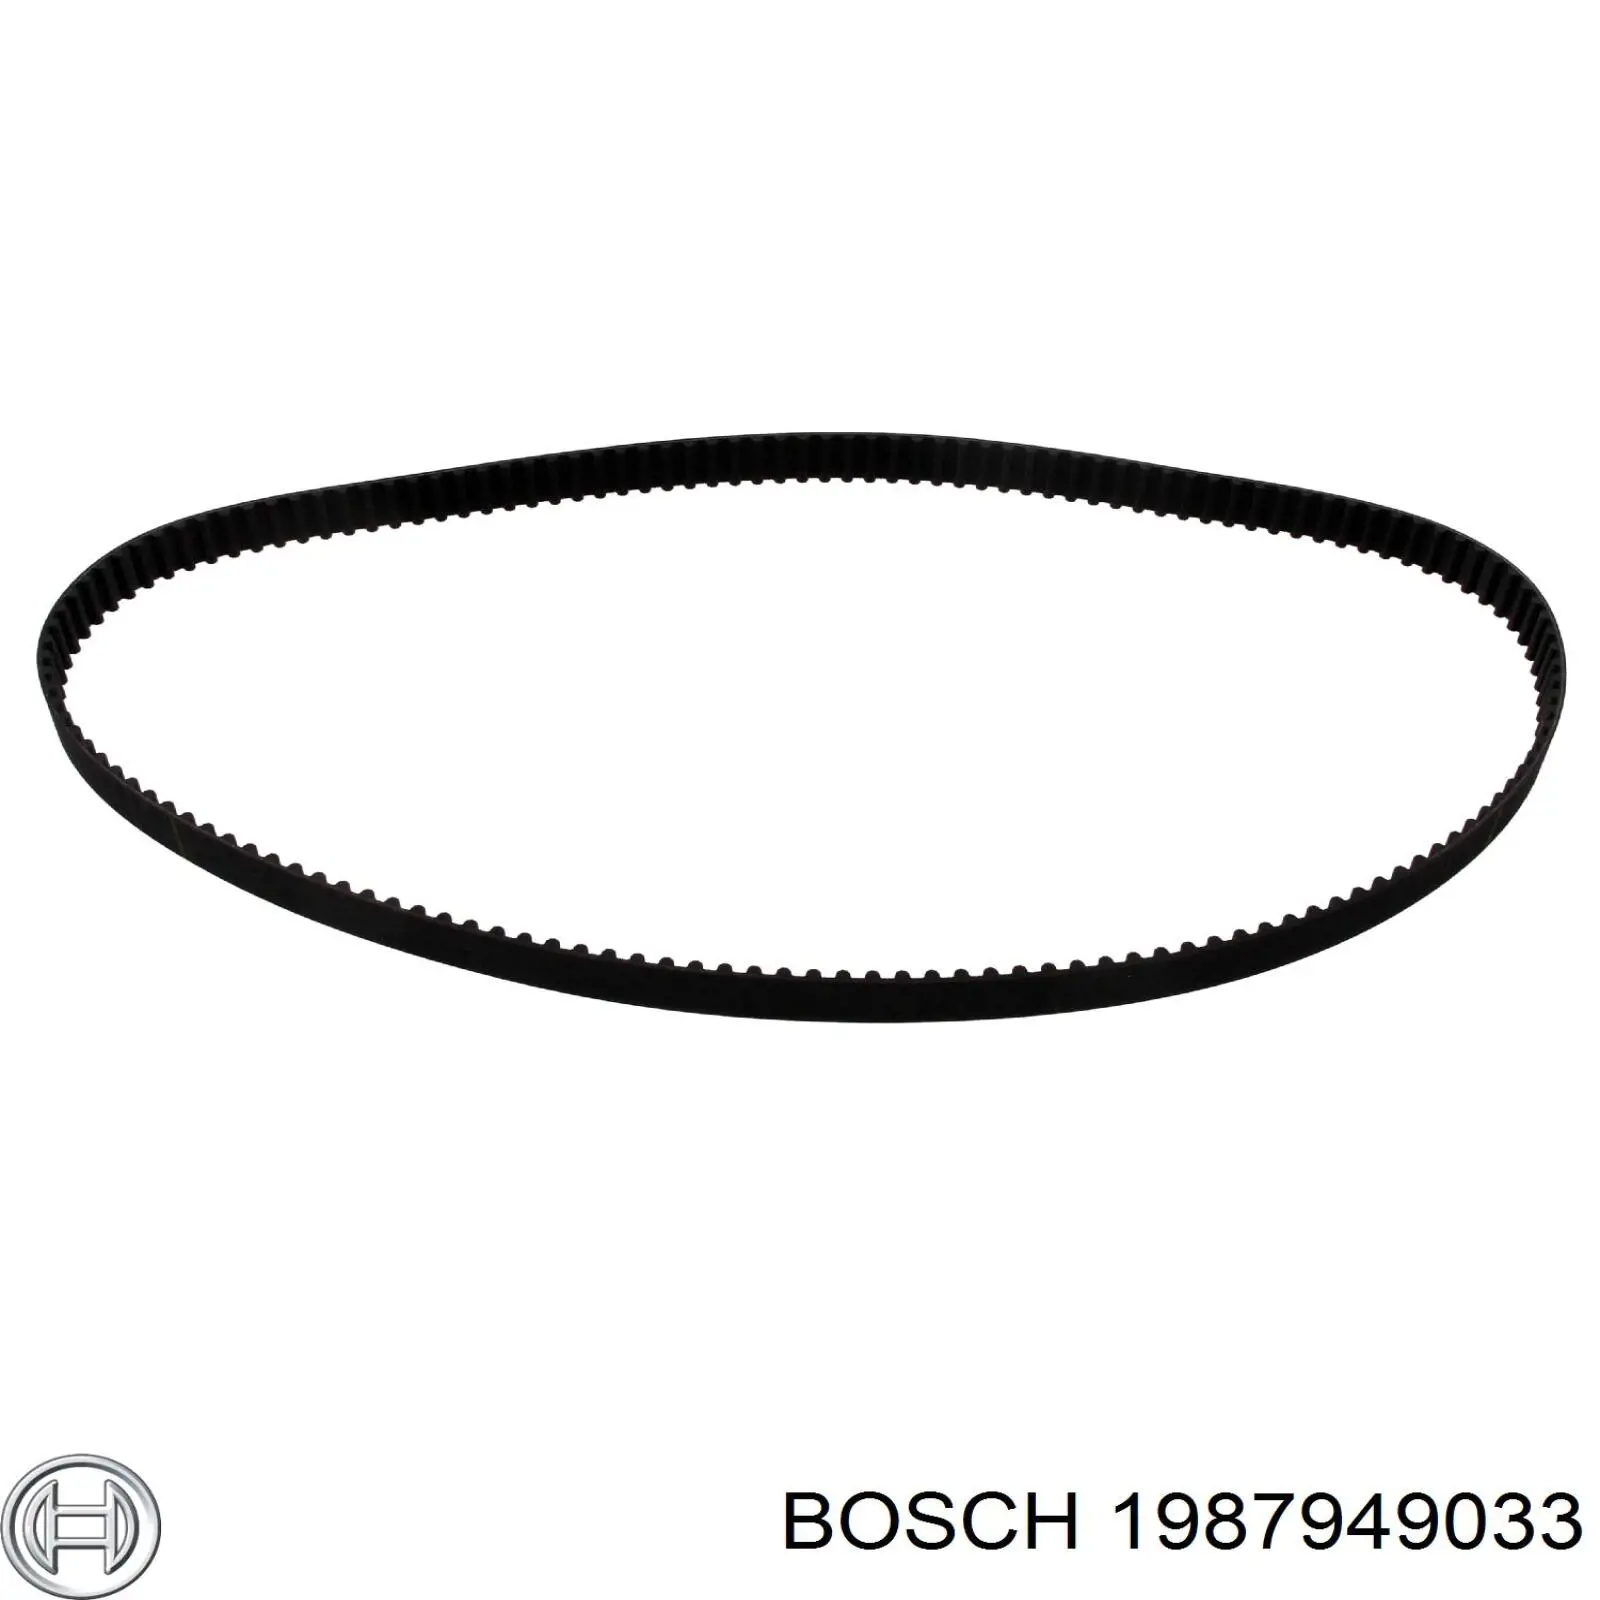 1987949033 Bosch correa distribucion